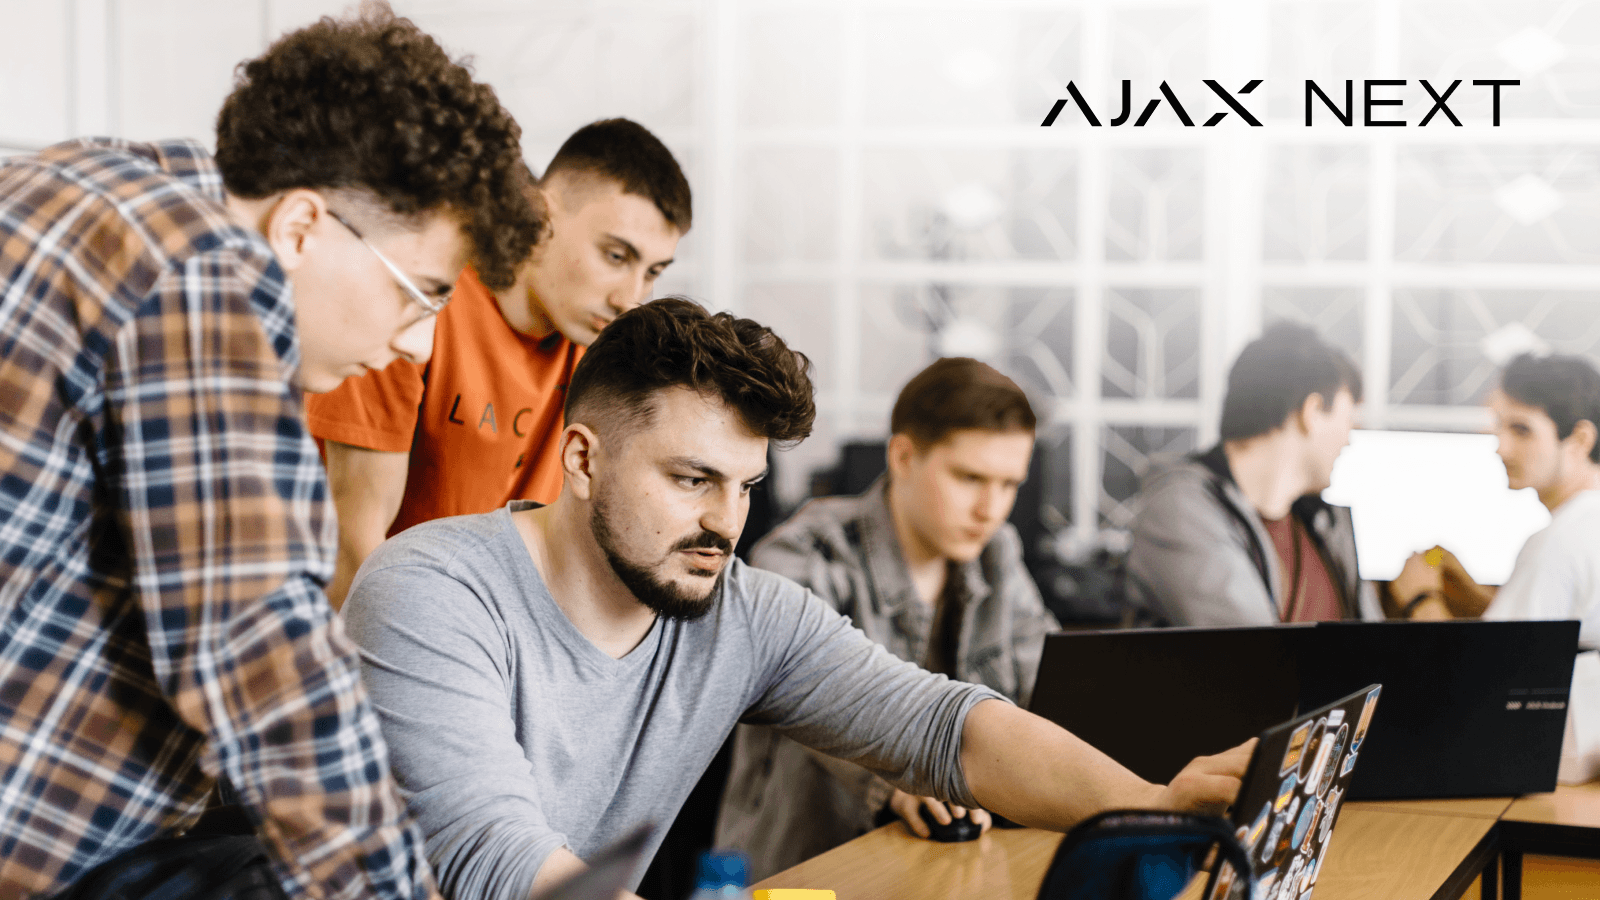 Ajax Systems lanceert een waardevol educatief initiatief  Ajax Next